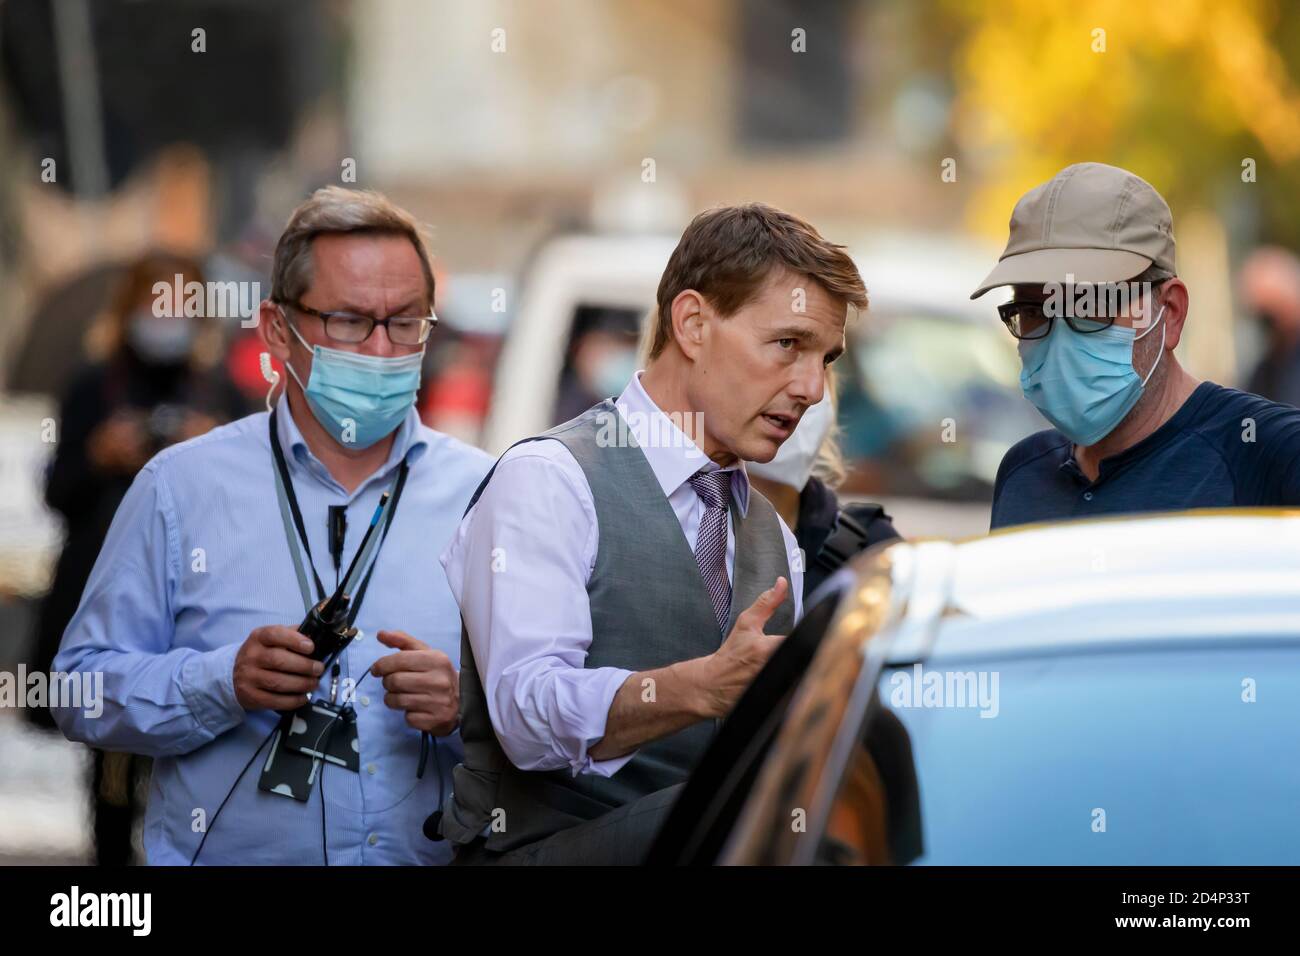 Roma, Italia - 9 ottobre 2020: L'attore Tom Cruise per le strade del centro storico, durante le riprese del nuovo film d'azione "Missione impossibile 7". Foto Stock